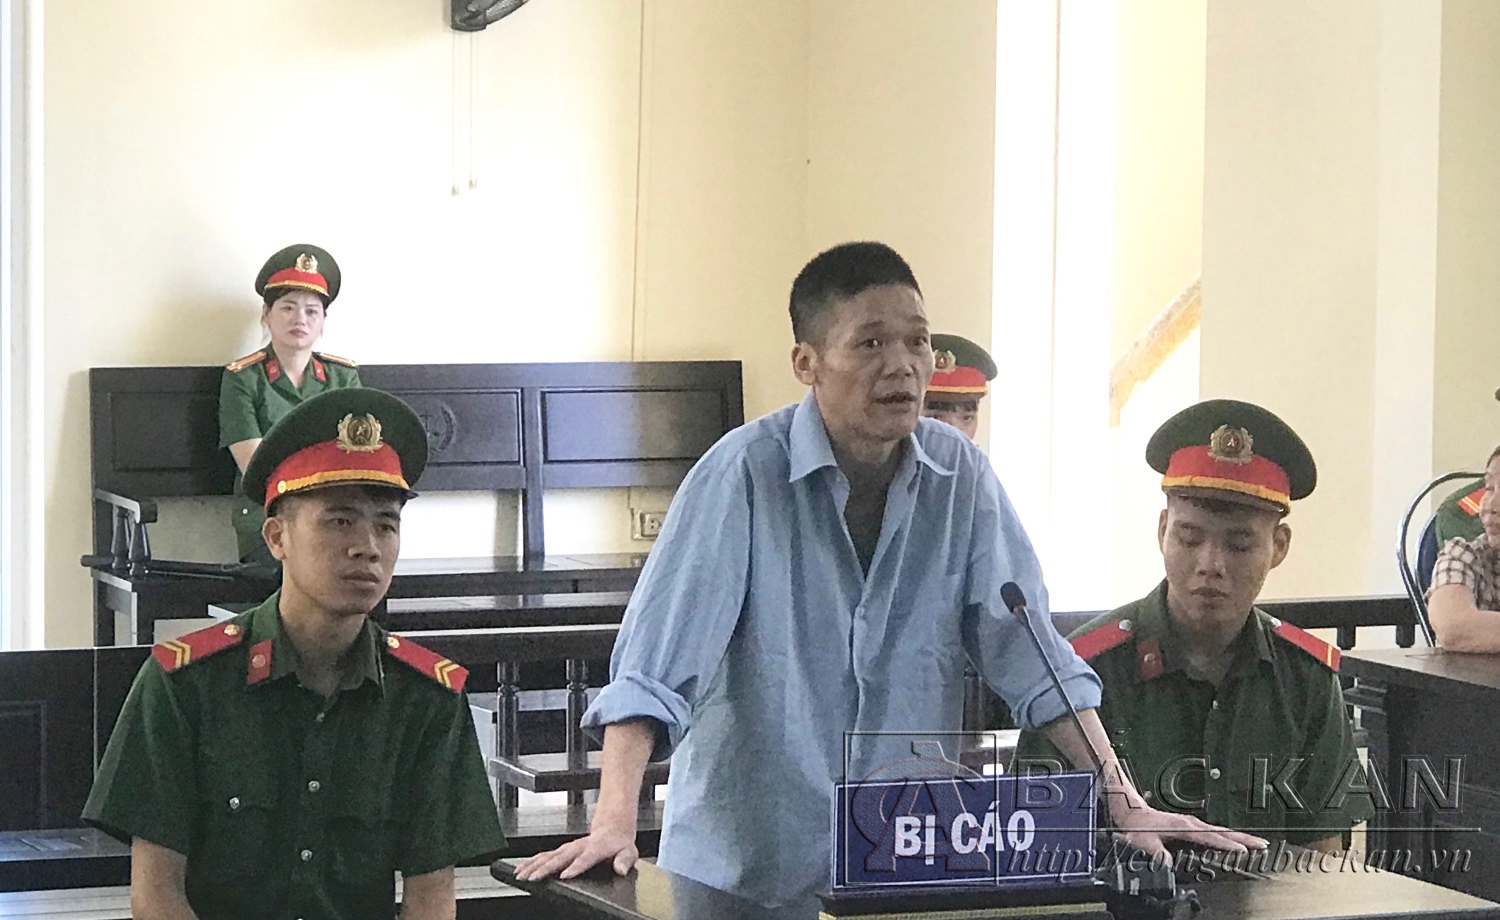   Bị cáo Tạ Văn Thường bị Tòa án nhân dân tỉnh Bắc Kạn xử phạt 10 năm tù về hành vi “Giết người”.